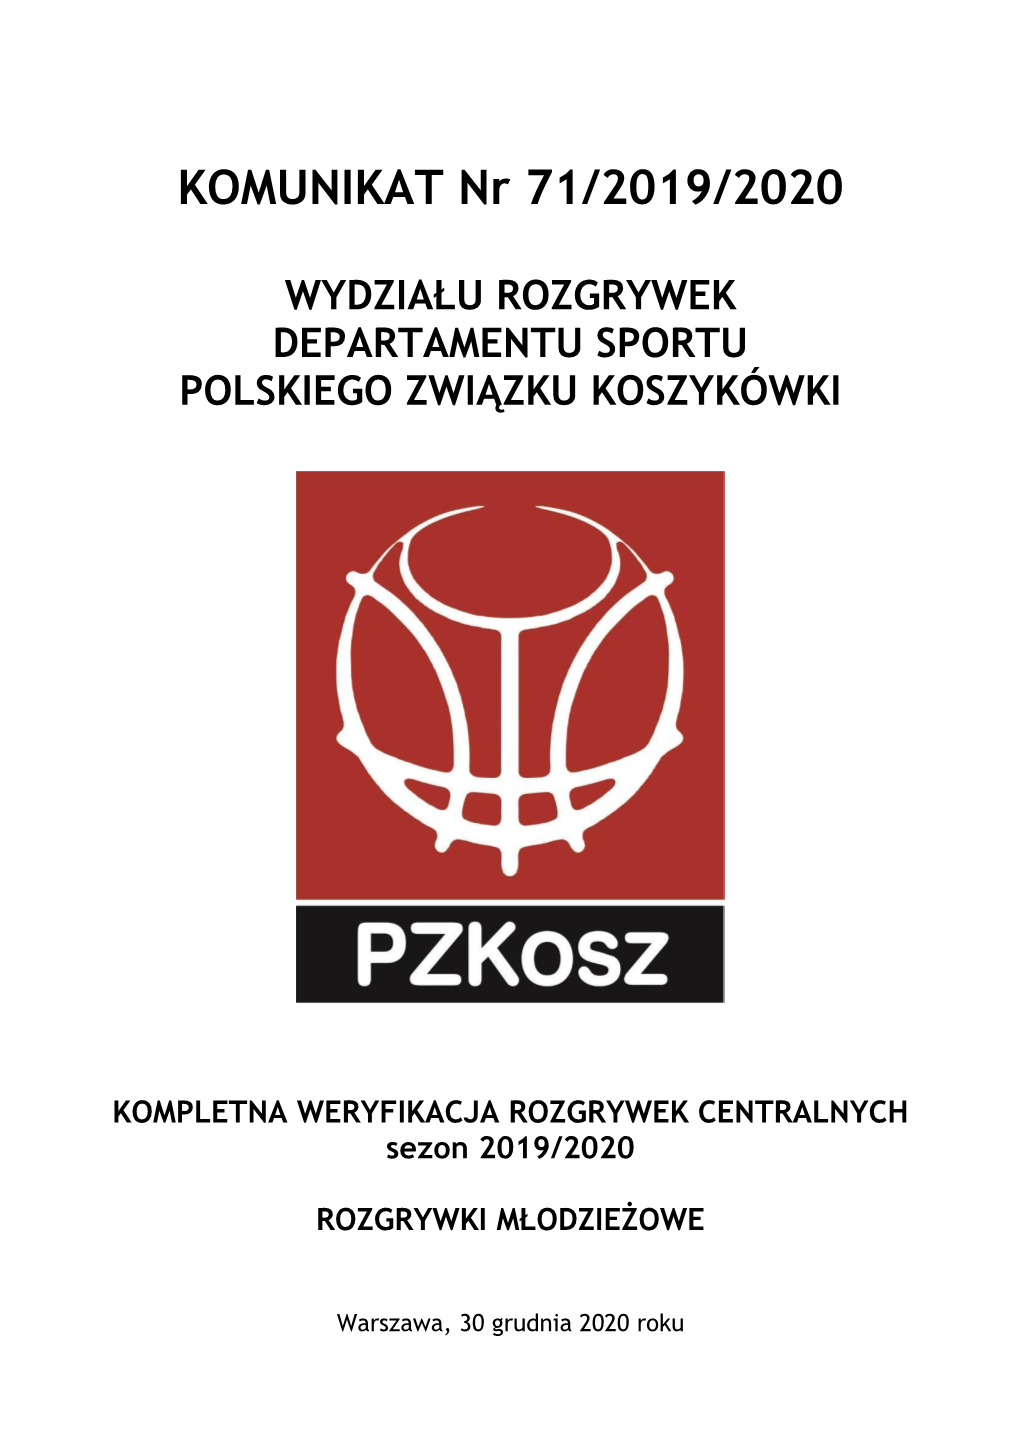 Komunikat Wydziału Rozgrywek 71/2019/2020